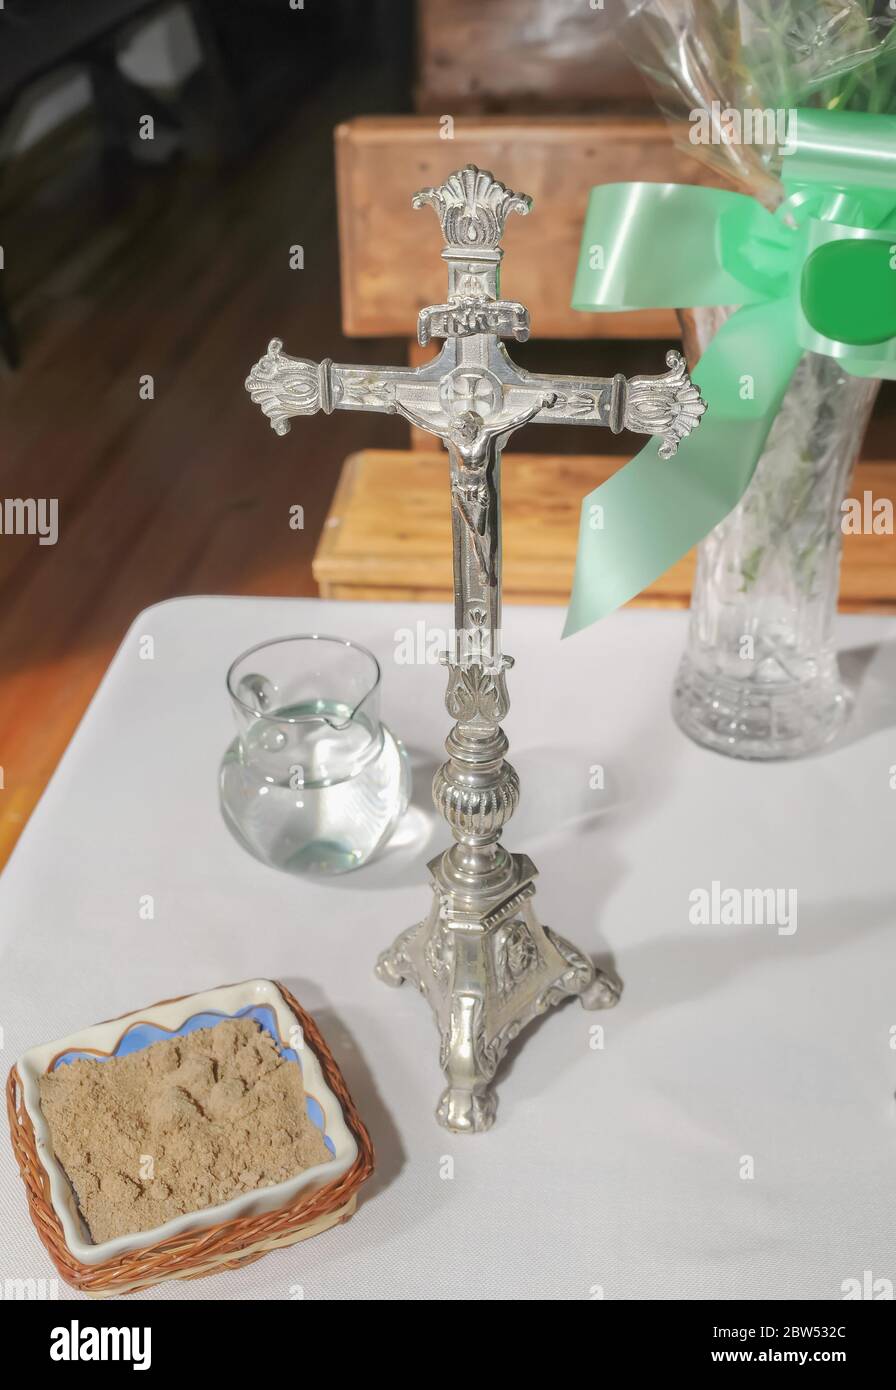 Christ crucifié dans le vieux crucifix d'argent à côté d'autres accessoires pour l'Eucharistie sur une table. Banque D'Images